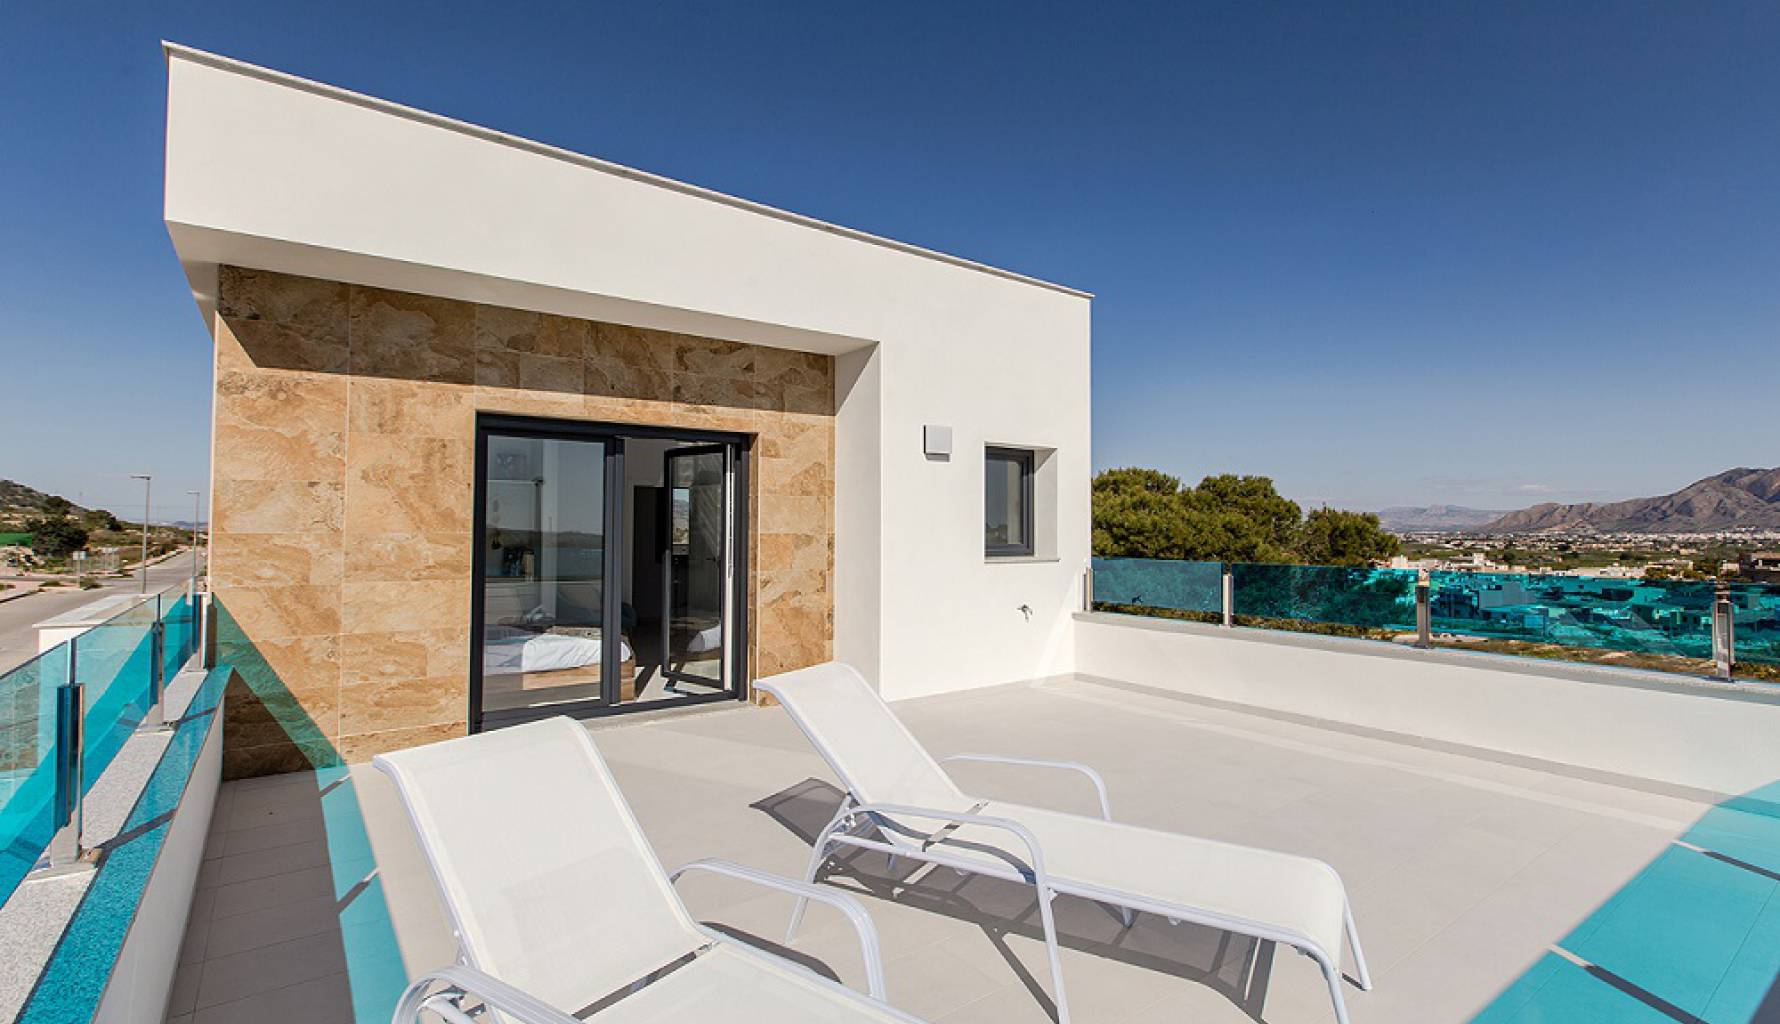 Solarium | Luxury villa with solarium for sale in Bigastro